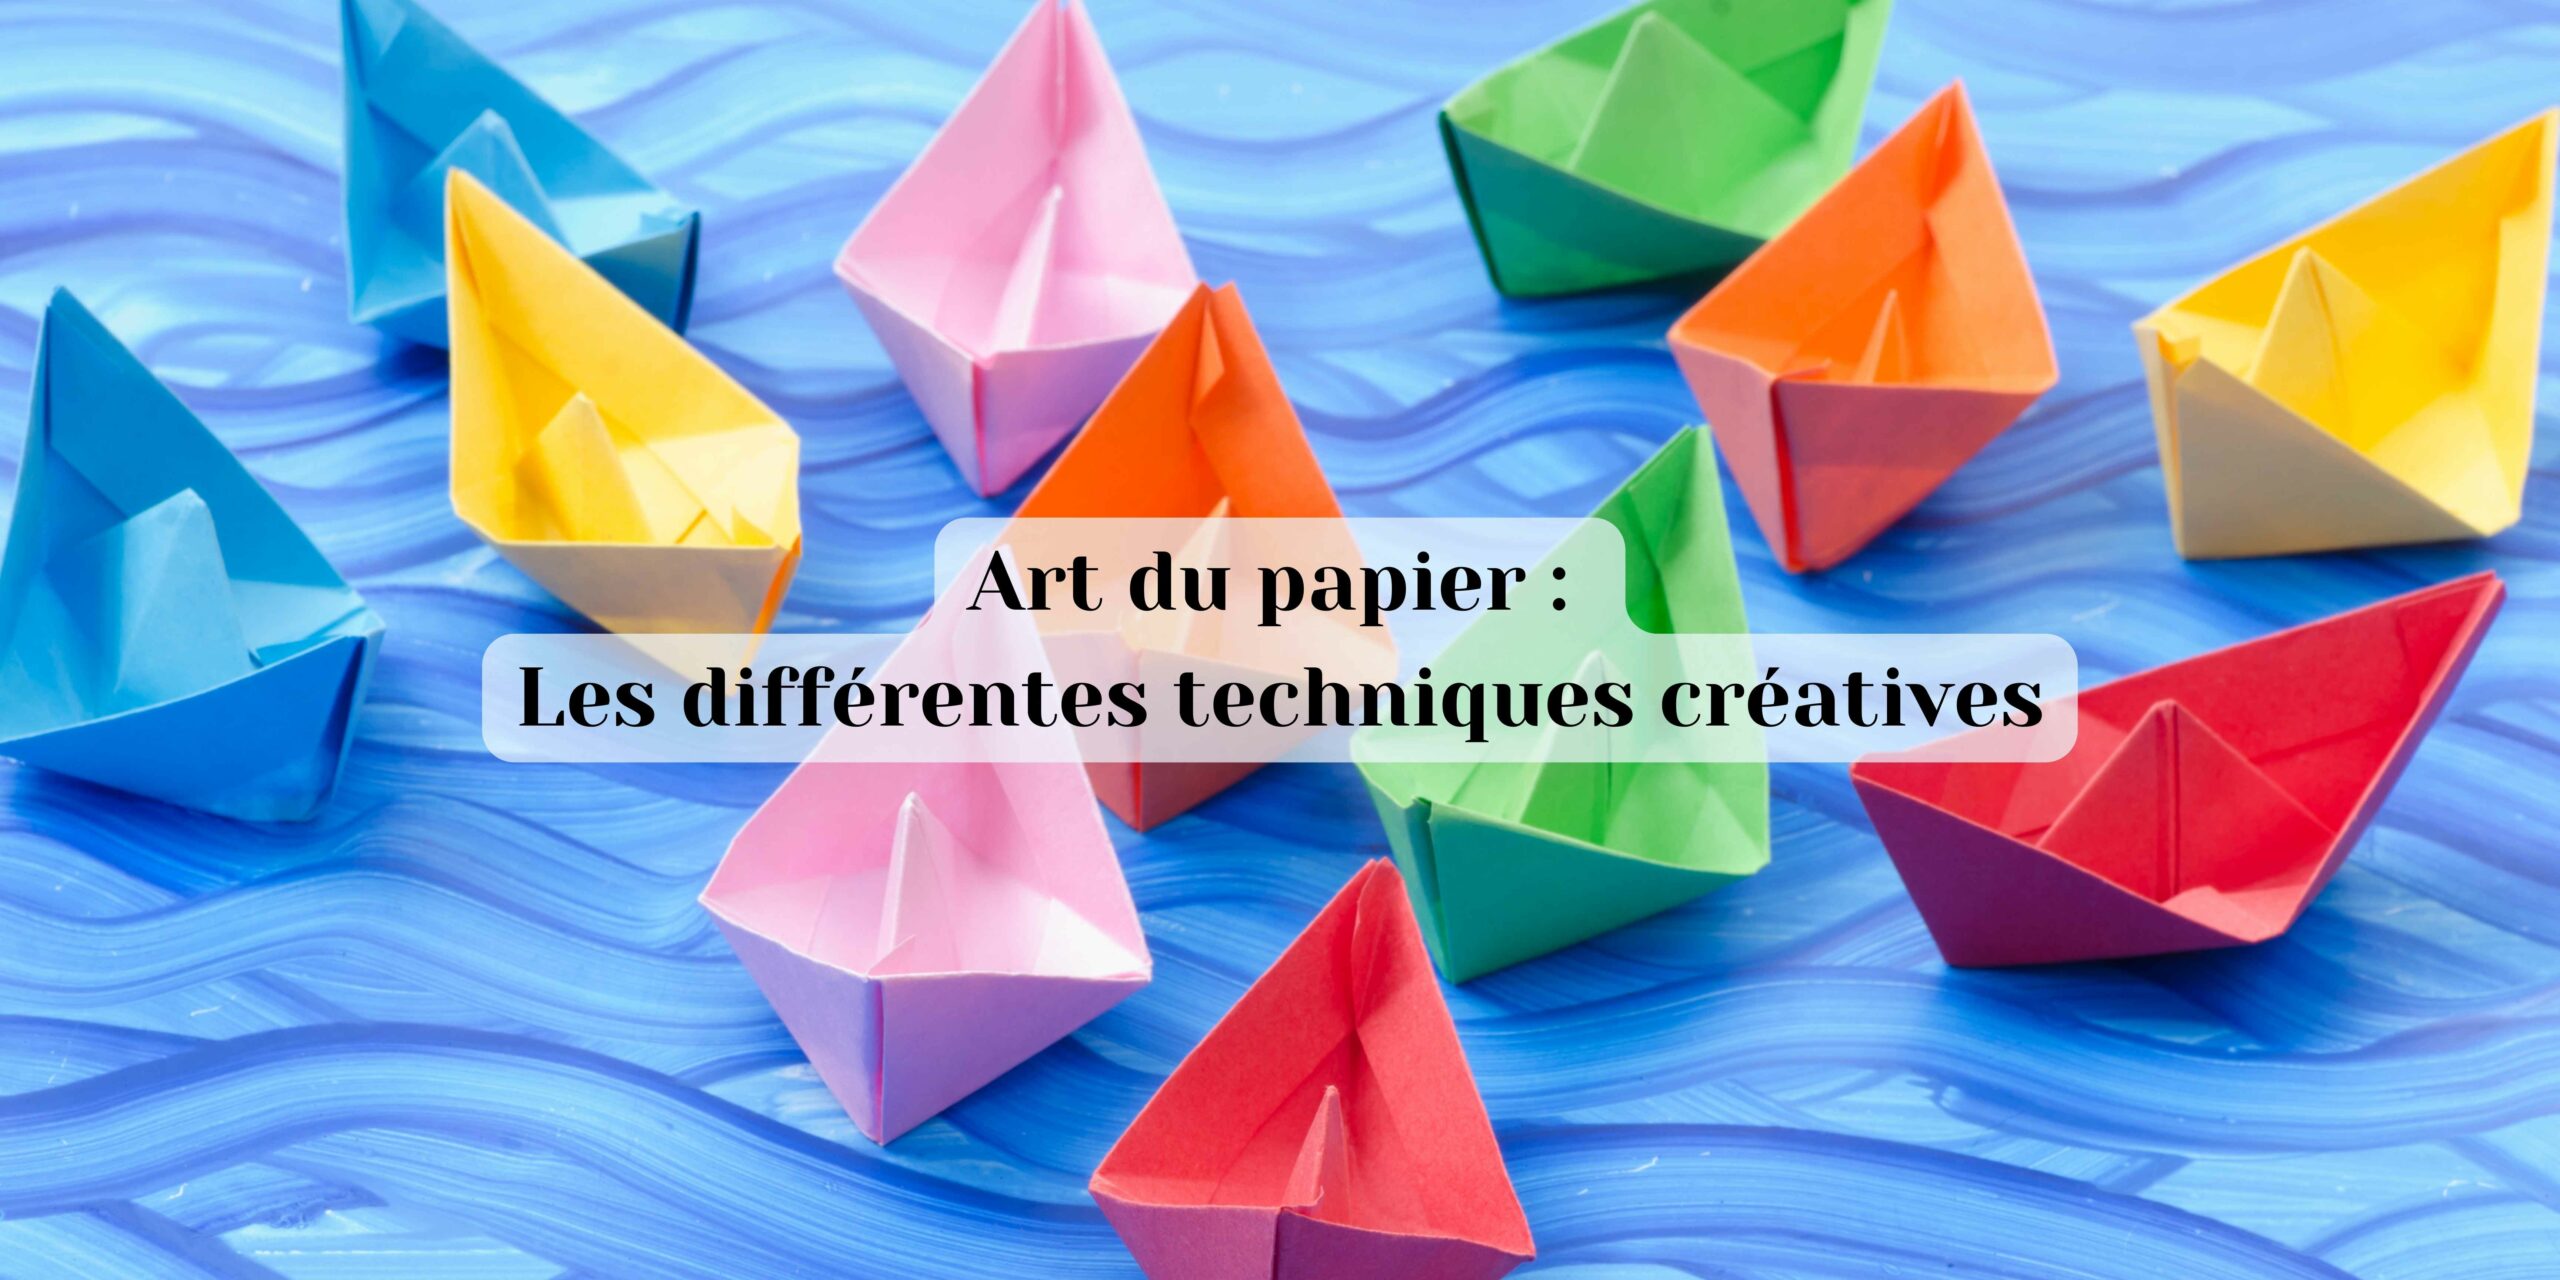 Art du papier : les différentes techniques créatives